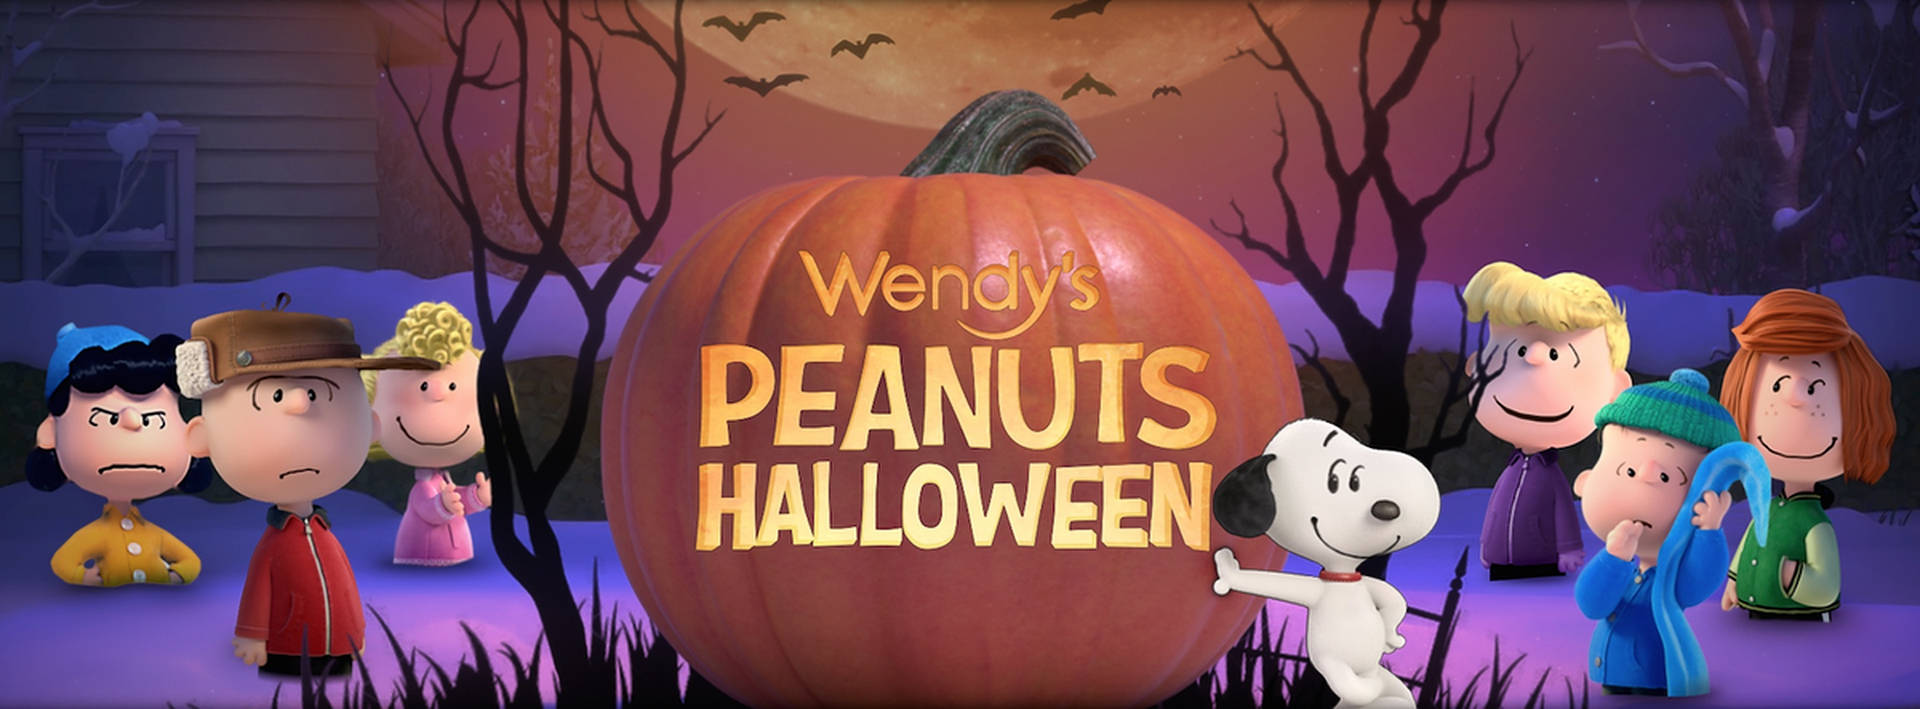 Charliebrown Halloween De Los Cacahuetes De Wendy En El Ordenador O El Fondo De Pantalla Móvil. Fondo de pantalla